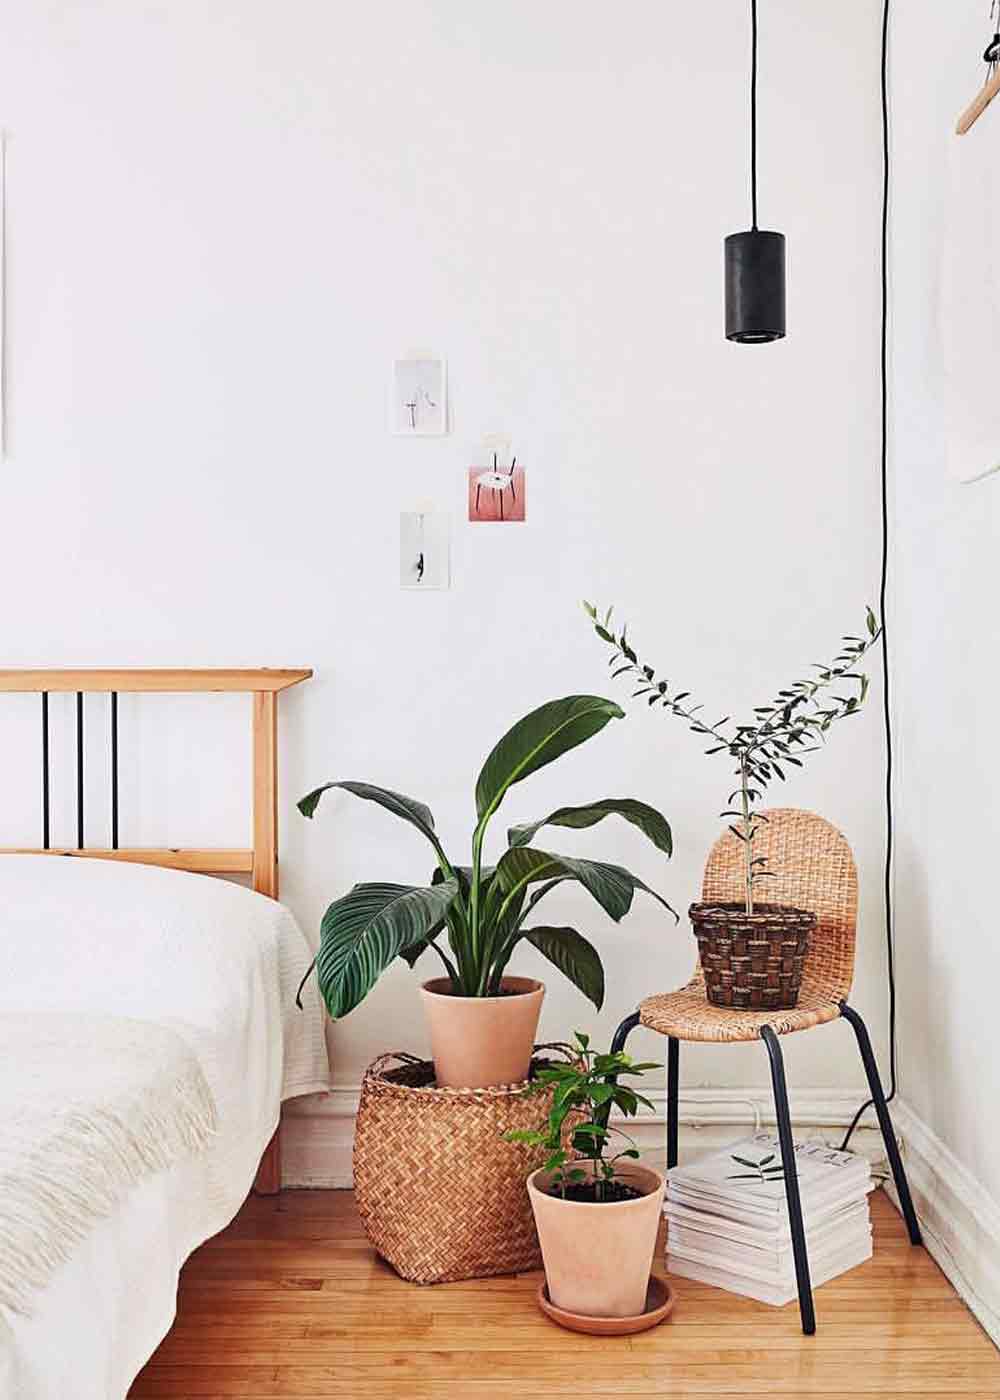 Neben einem Bett steht ein grosses Einblatt in einem Bastkorb. Daneben hat es ein Stuhl mit Wiener Gelfecht und darauf eine Pflanze in einem Bastkorb. Unten steht ein Terracotta-Topf mit einer Pflanze darin. 